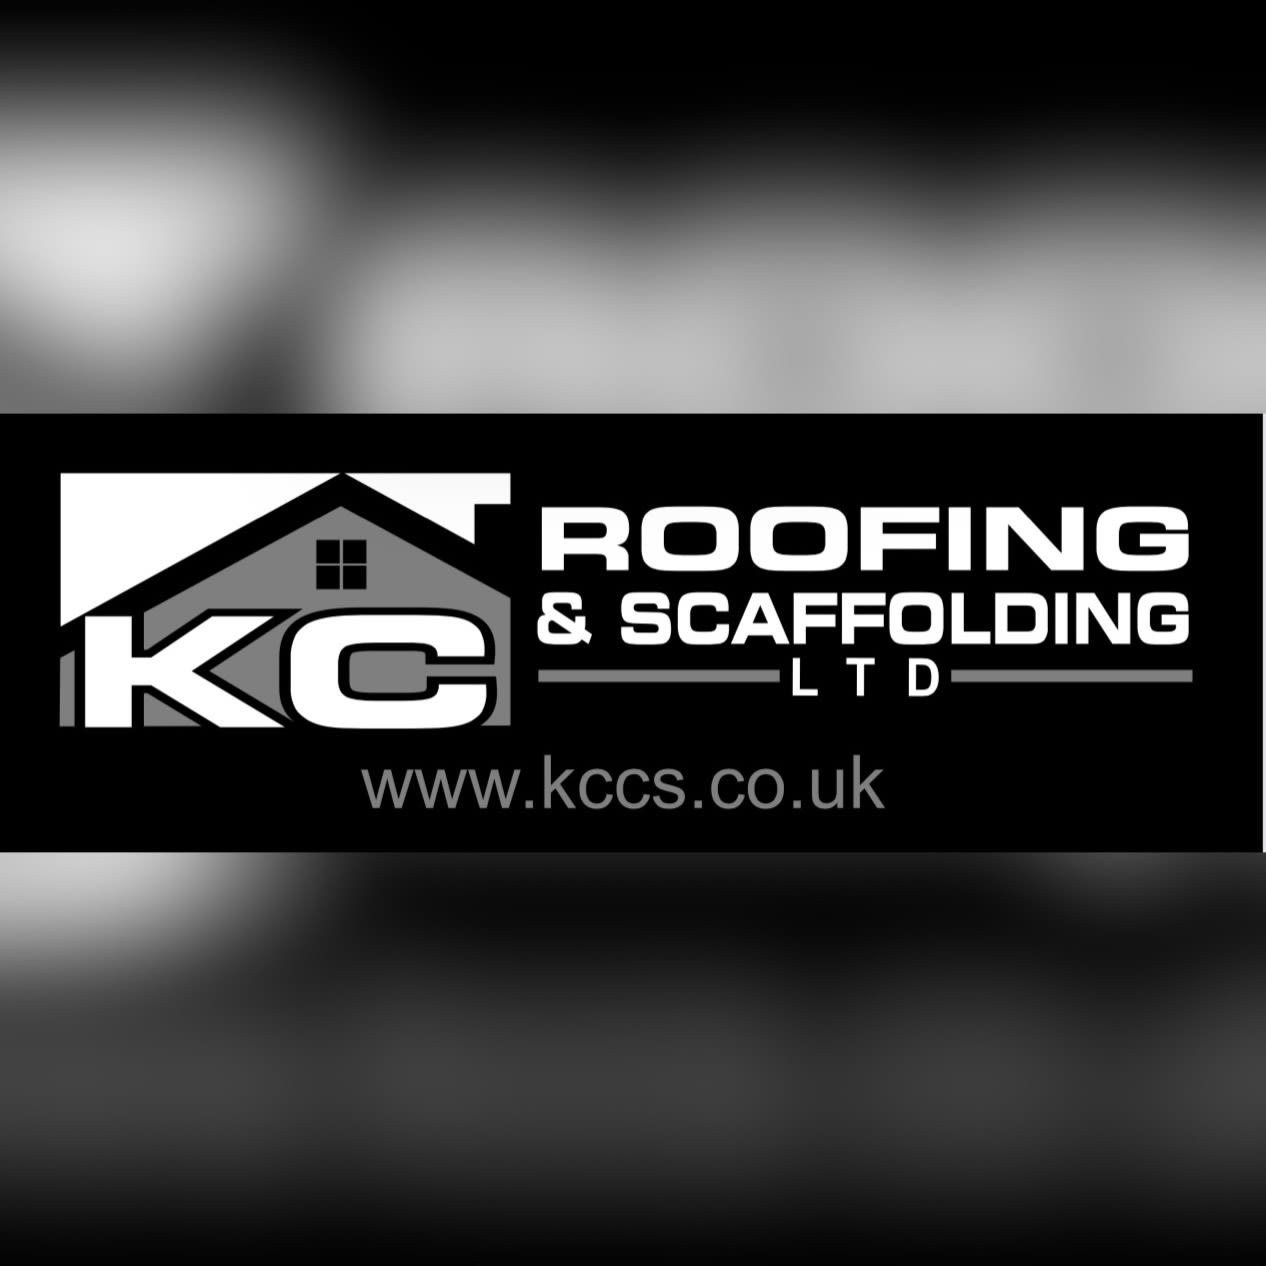 K C Roofing & Scaffolding Ltd Logo